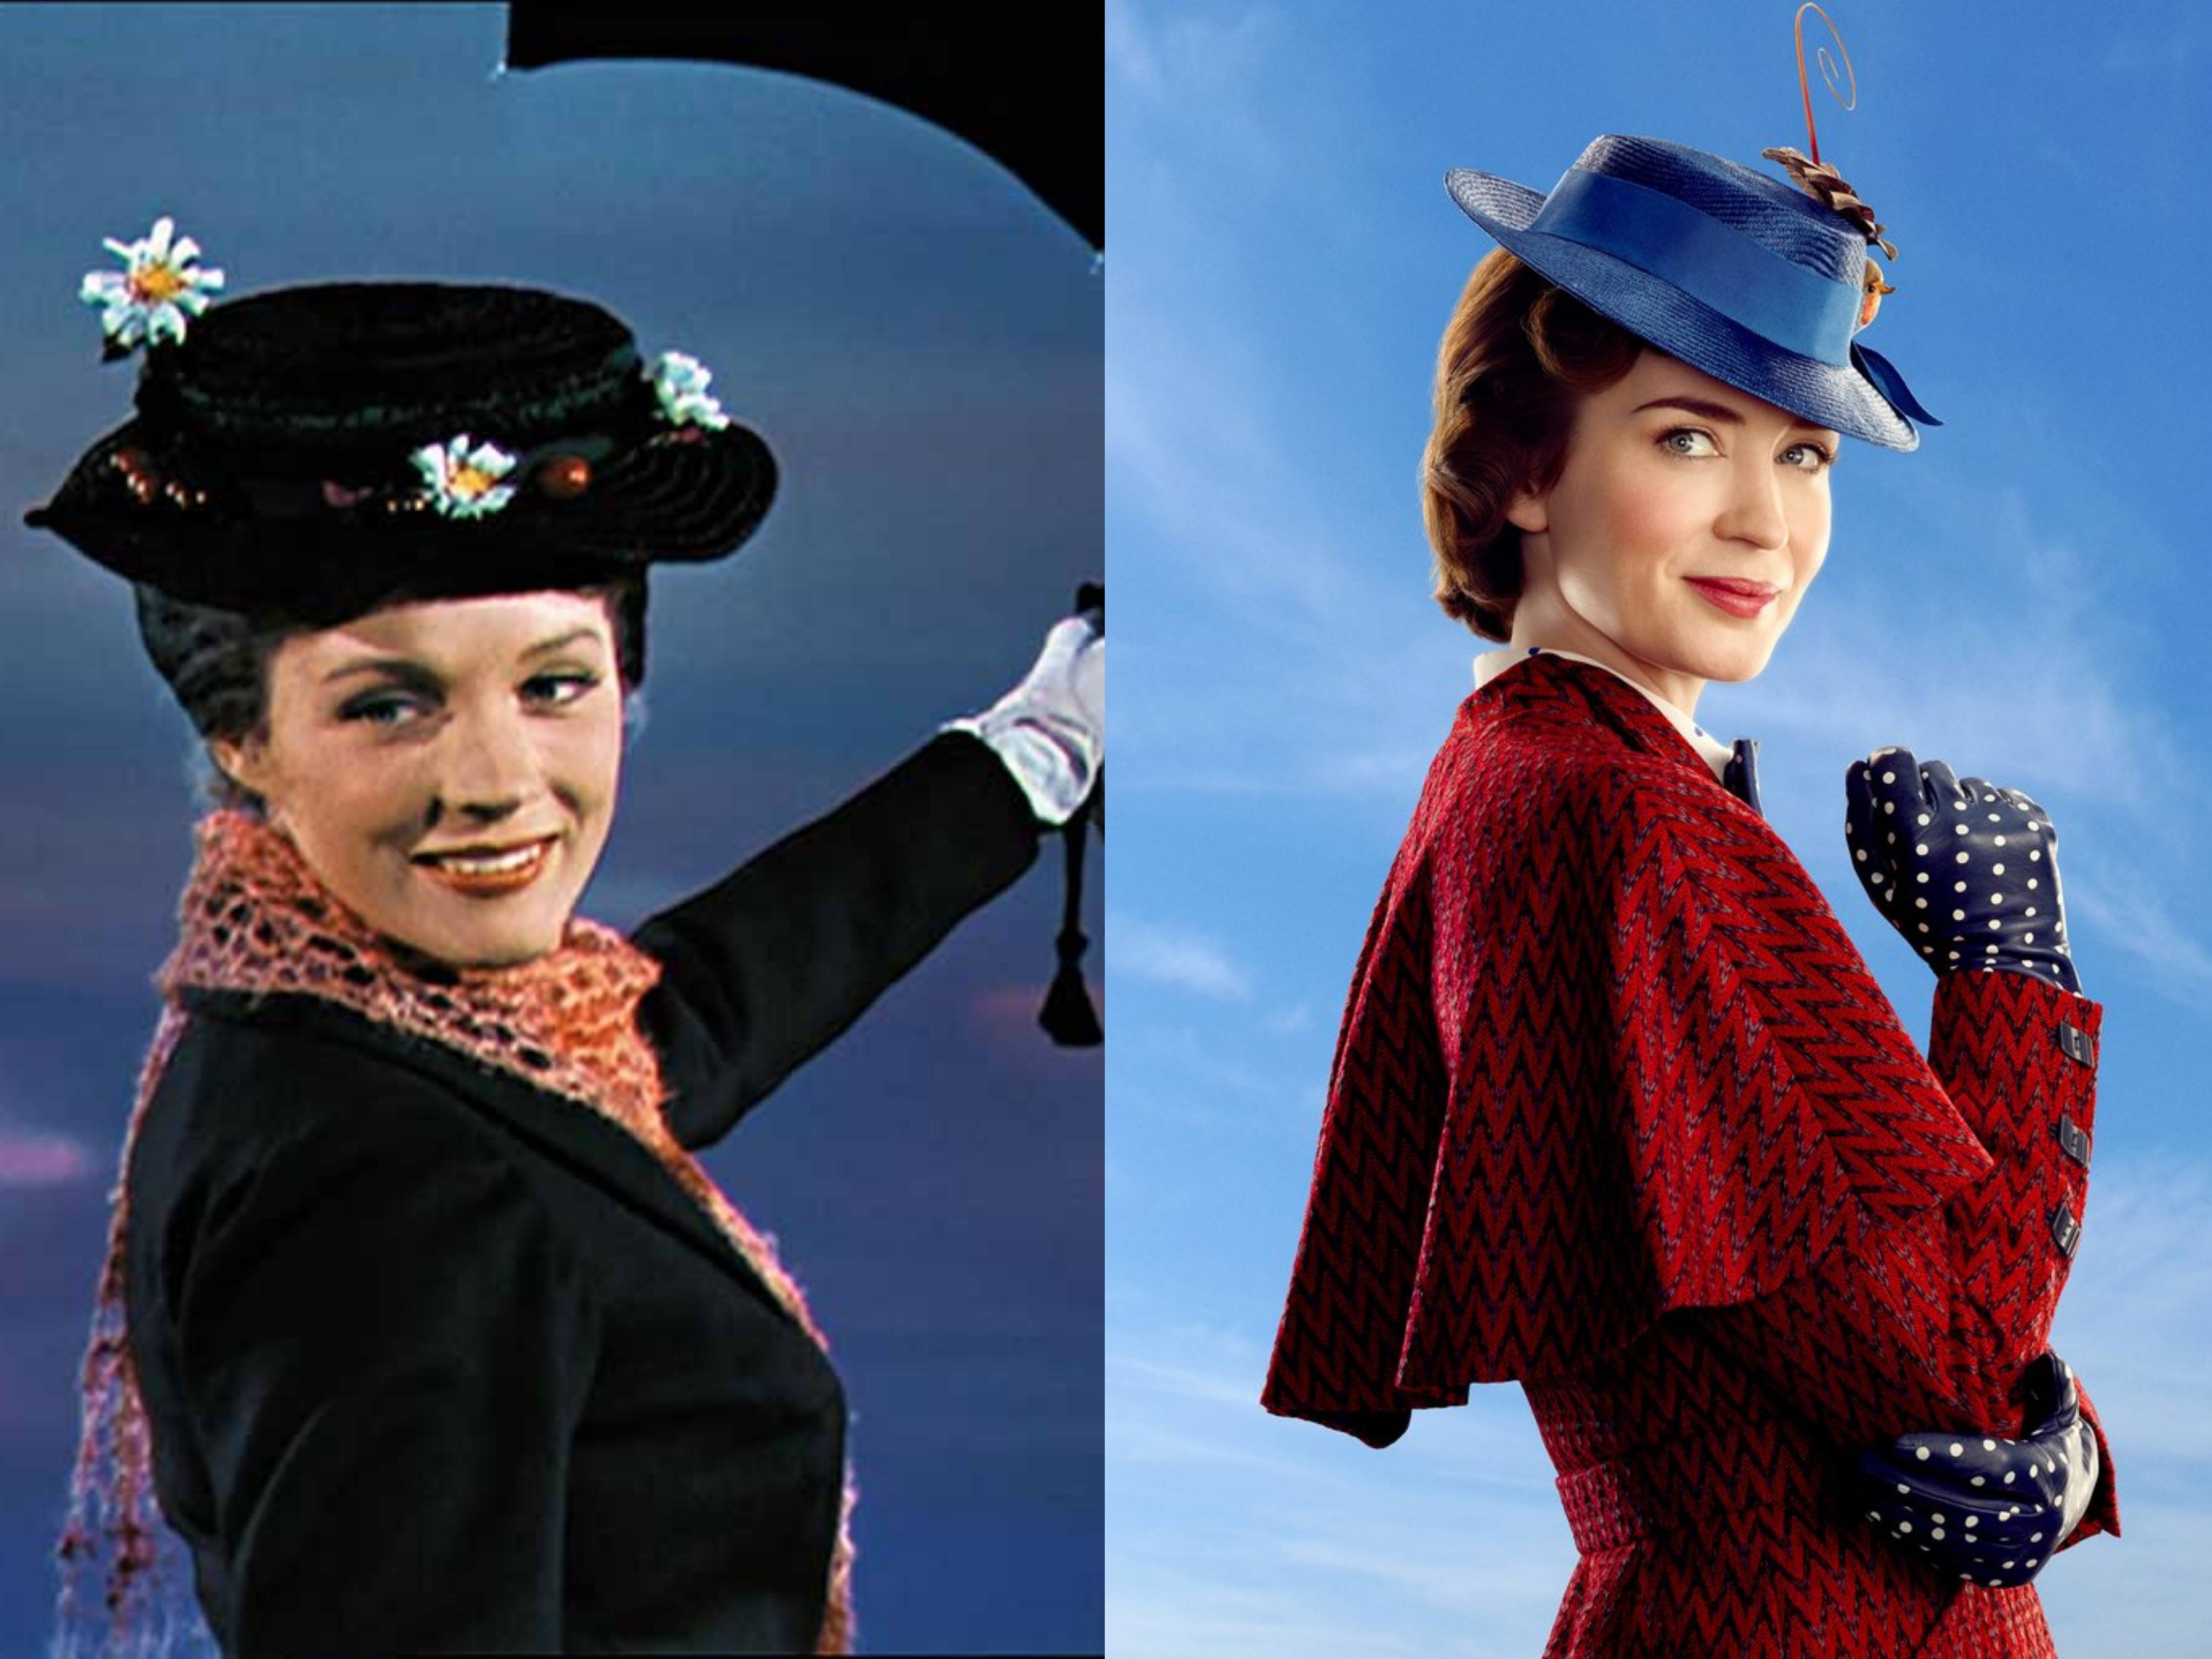 Find more Este es el teaser trailer de Mary Poppins. 